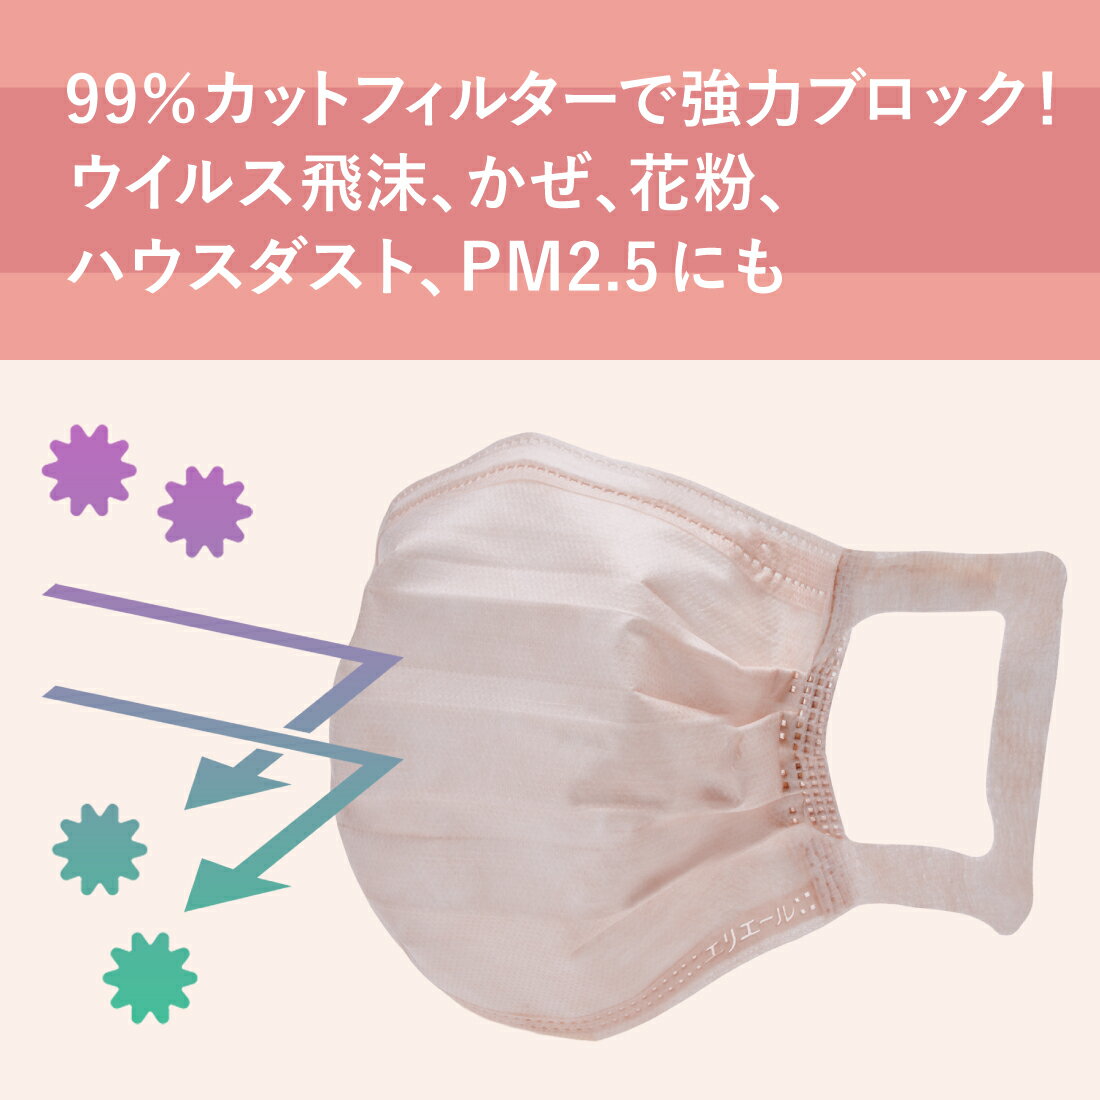 【数量限定】大王製紙 ハイパーブロックマスク リラカラ ローズ 30枚 小さめサイズ 4902011833522